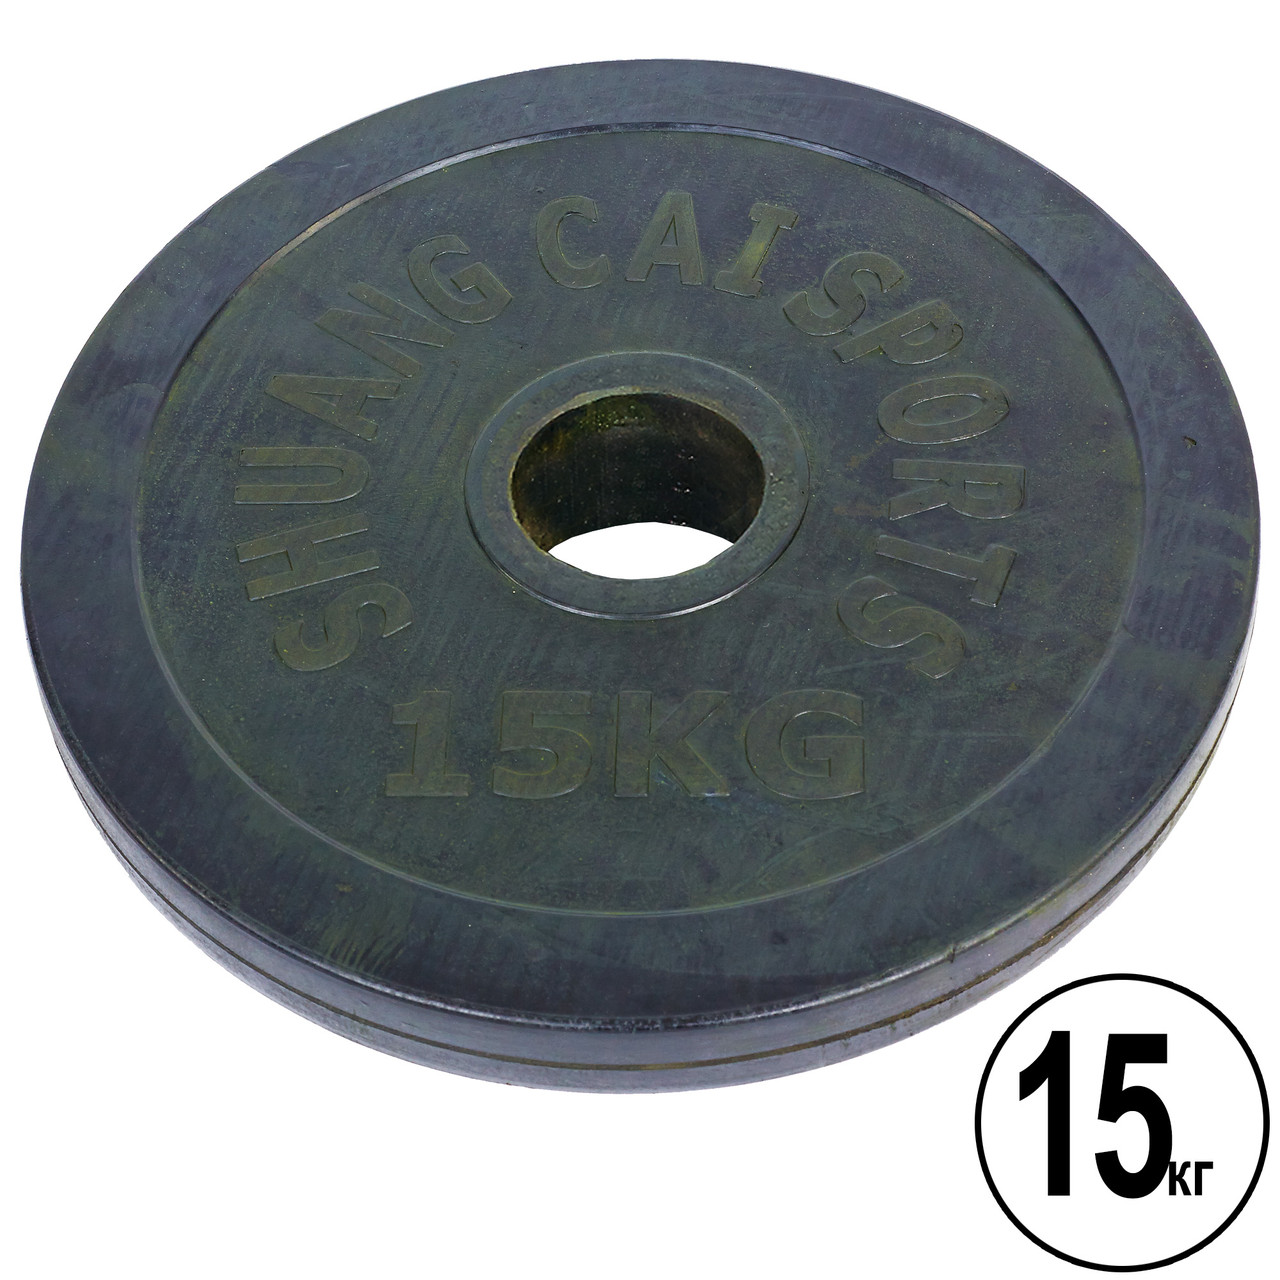 Прогумовані диски (блини) для грифа 52 мм (1 шт. х 15 кг) SHUANG CAI SPORTS TA-1448-15B